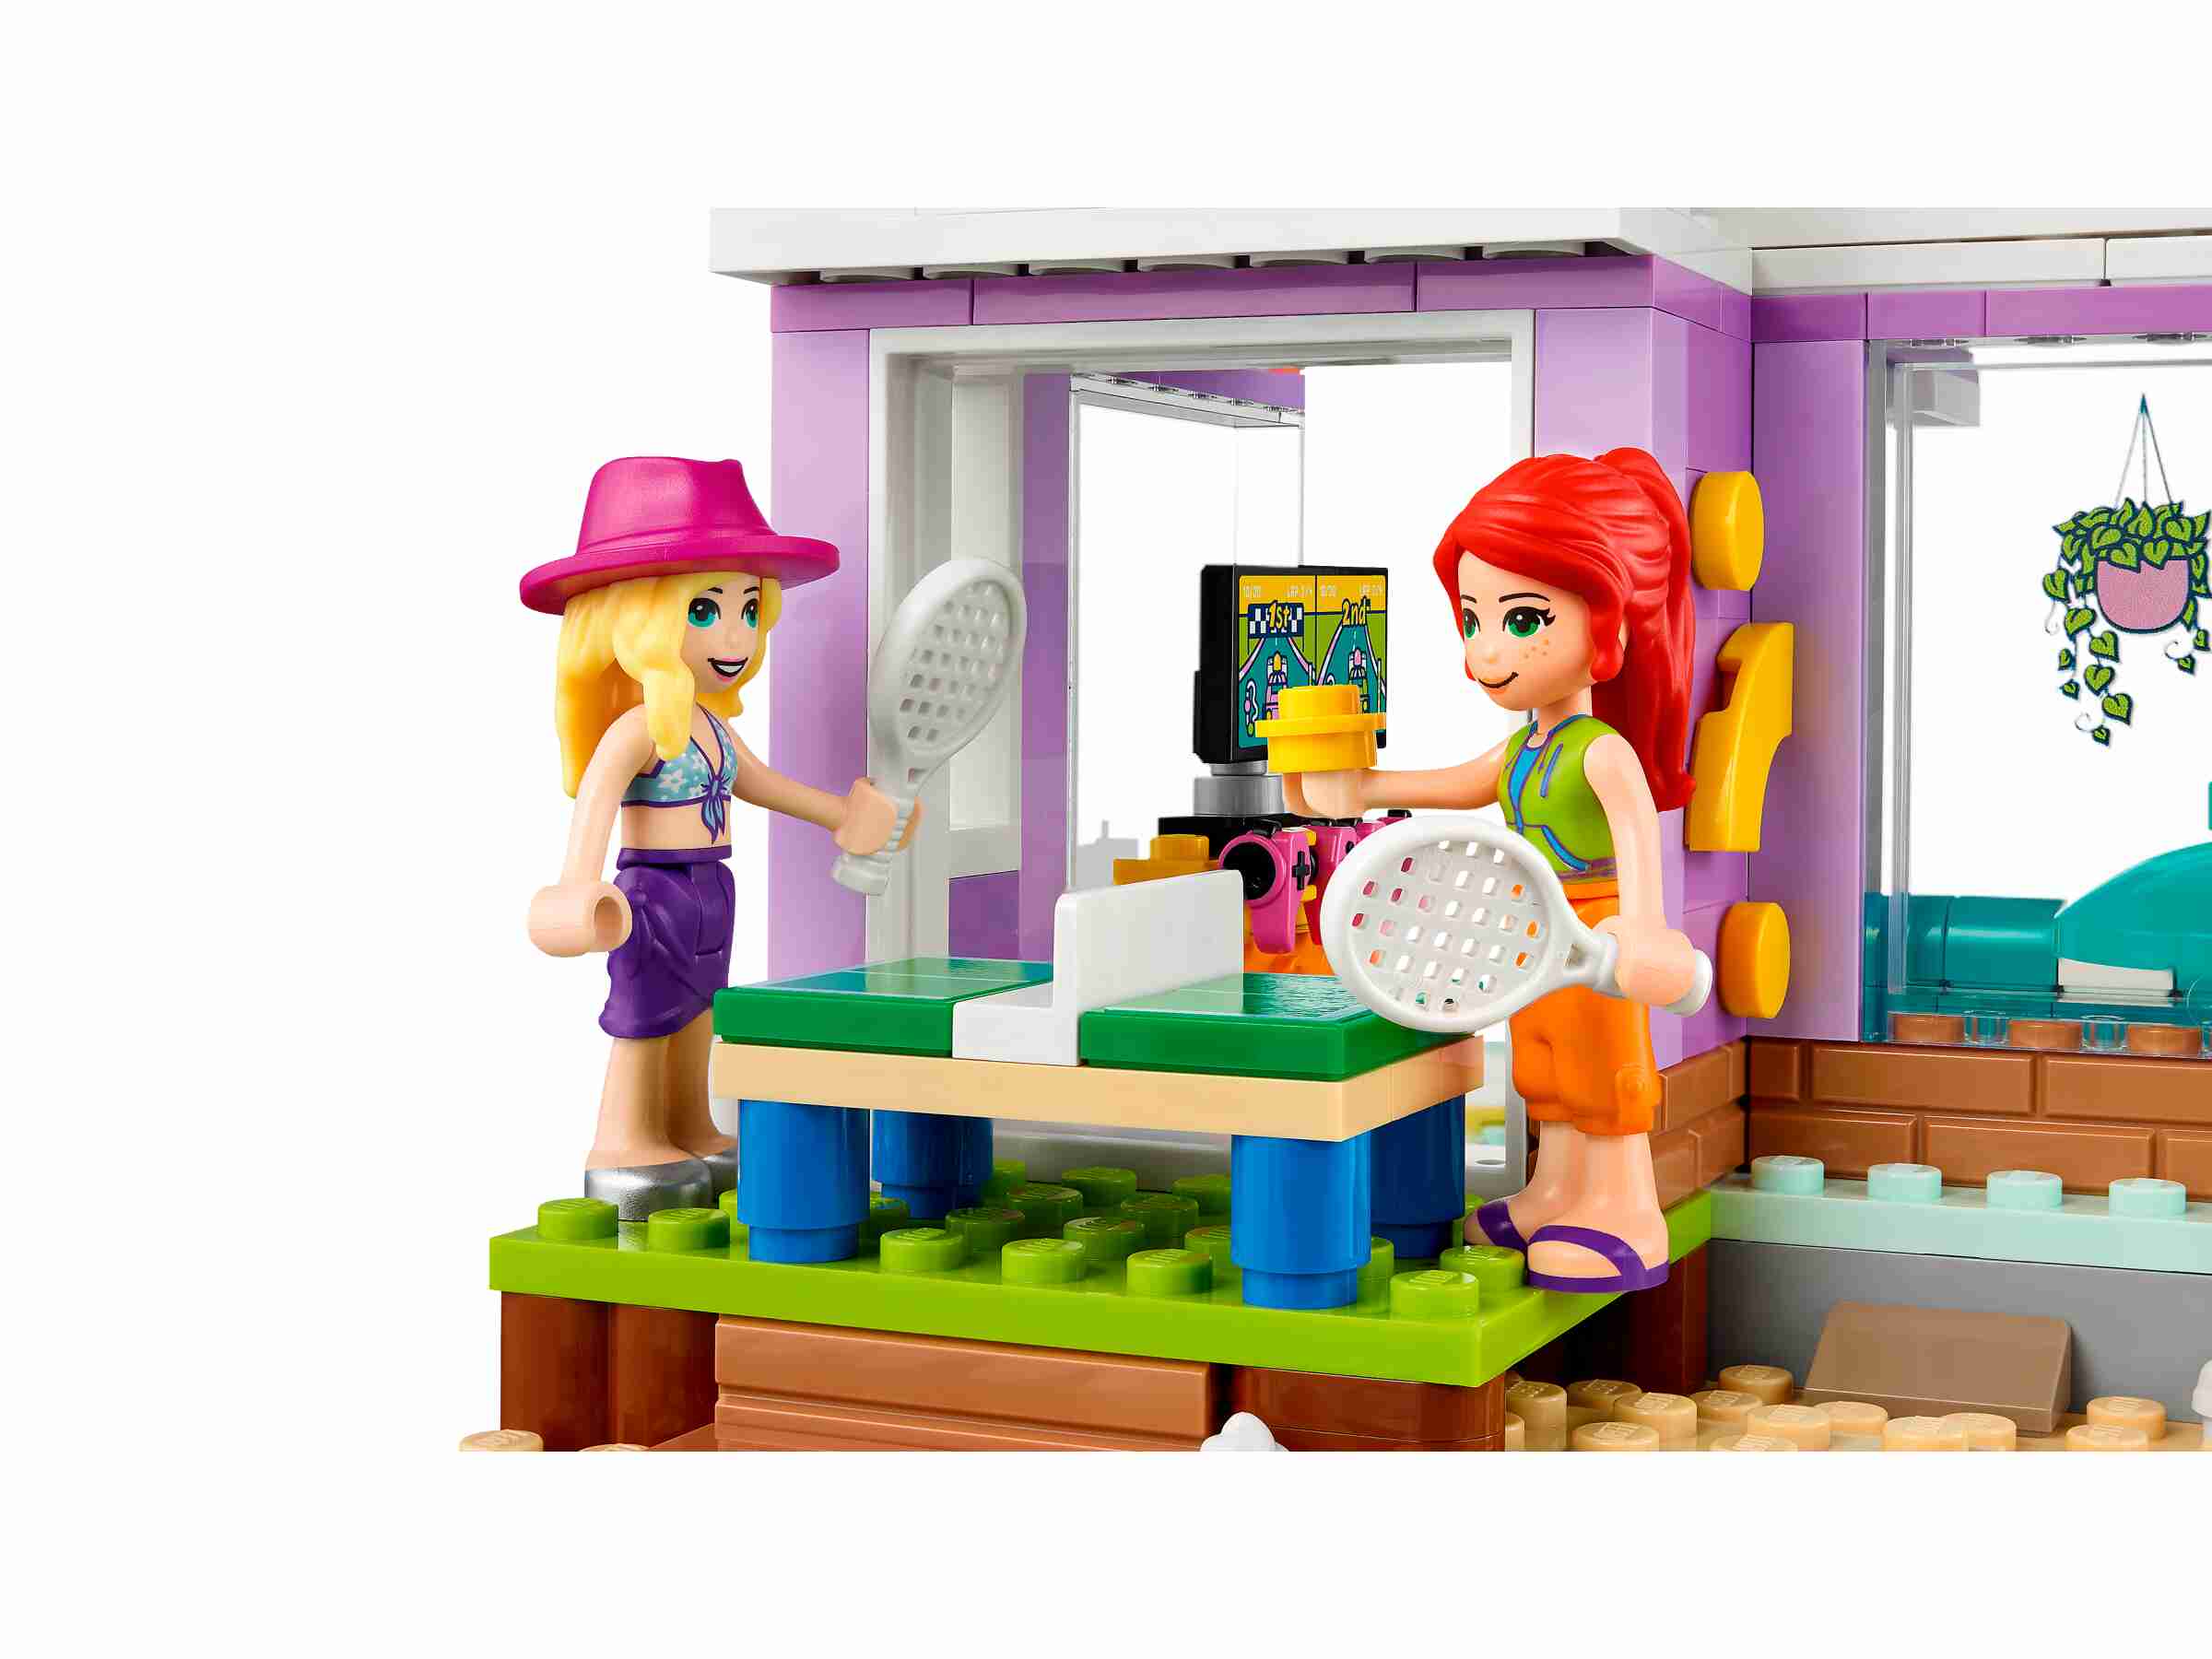 LEGO 41709 Friends Ferienhaus am Strand, Puppenhaus mit Mia und einem Schwimmbad